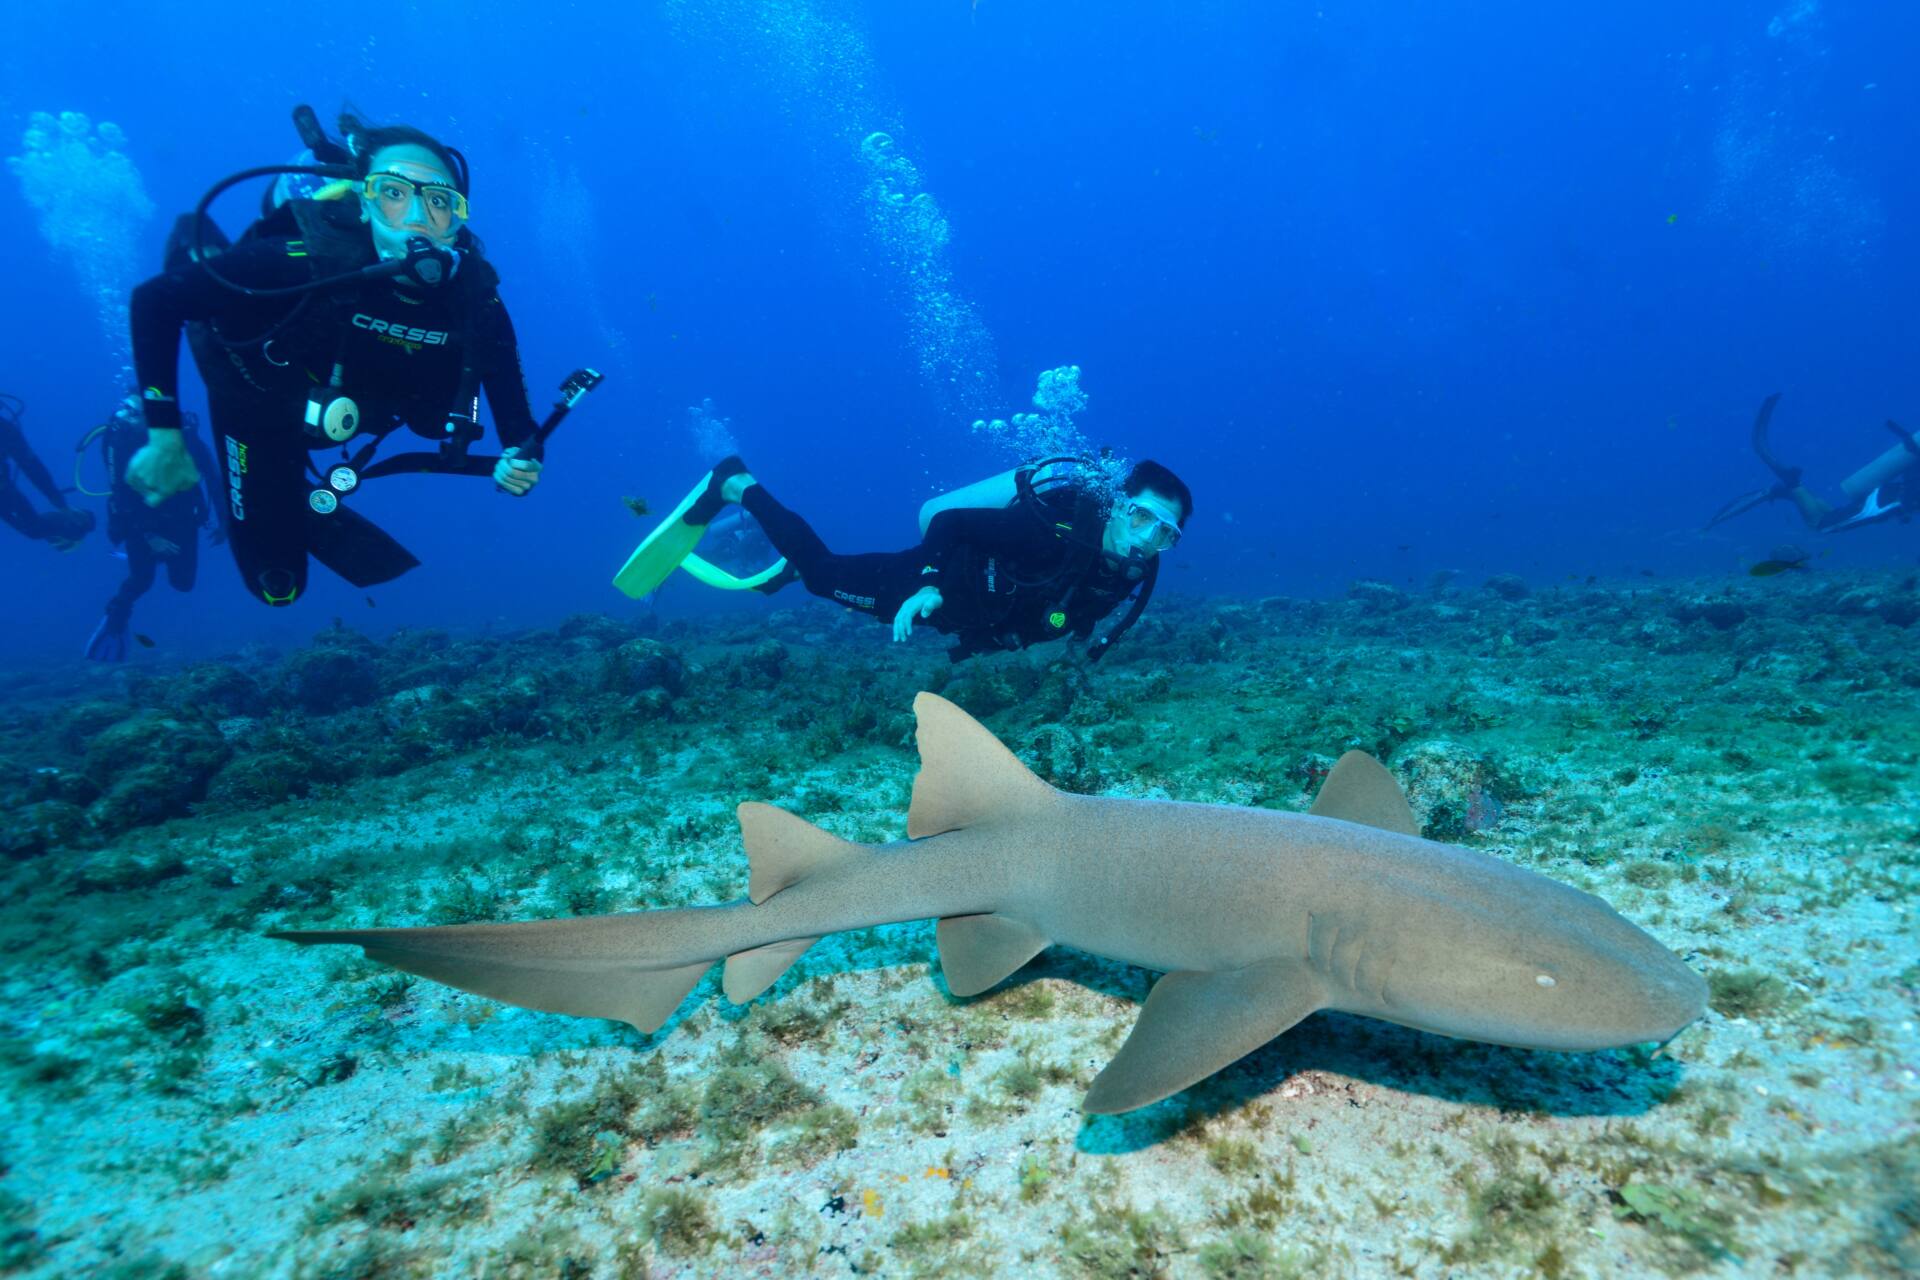 Mergulho e Snorkel em Fernando de Noronha - Mergulho com tubarão em Noronha